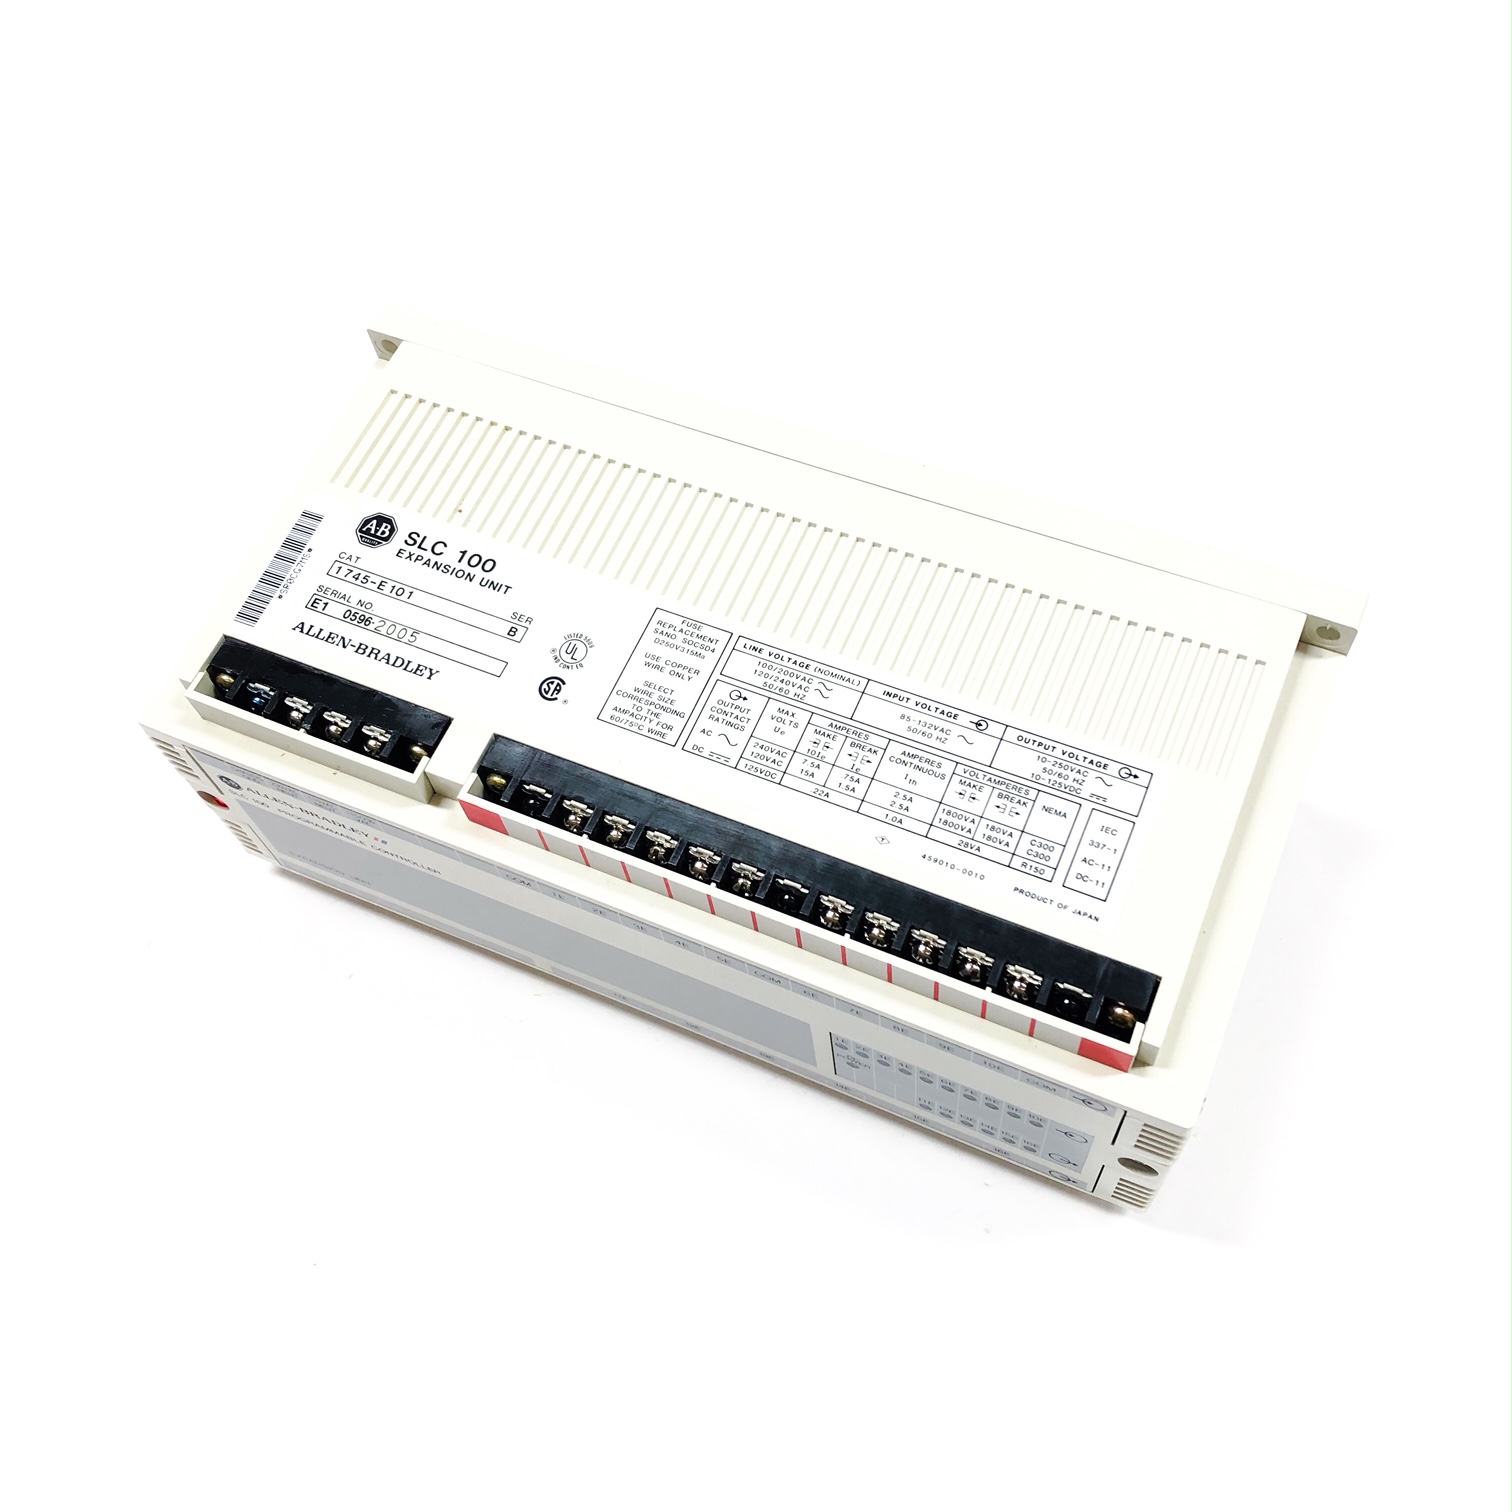 1745-E101 Allen Bradley Programmable Logic Controllers SLC 100 Expansion Unit 5